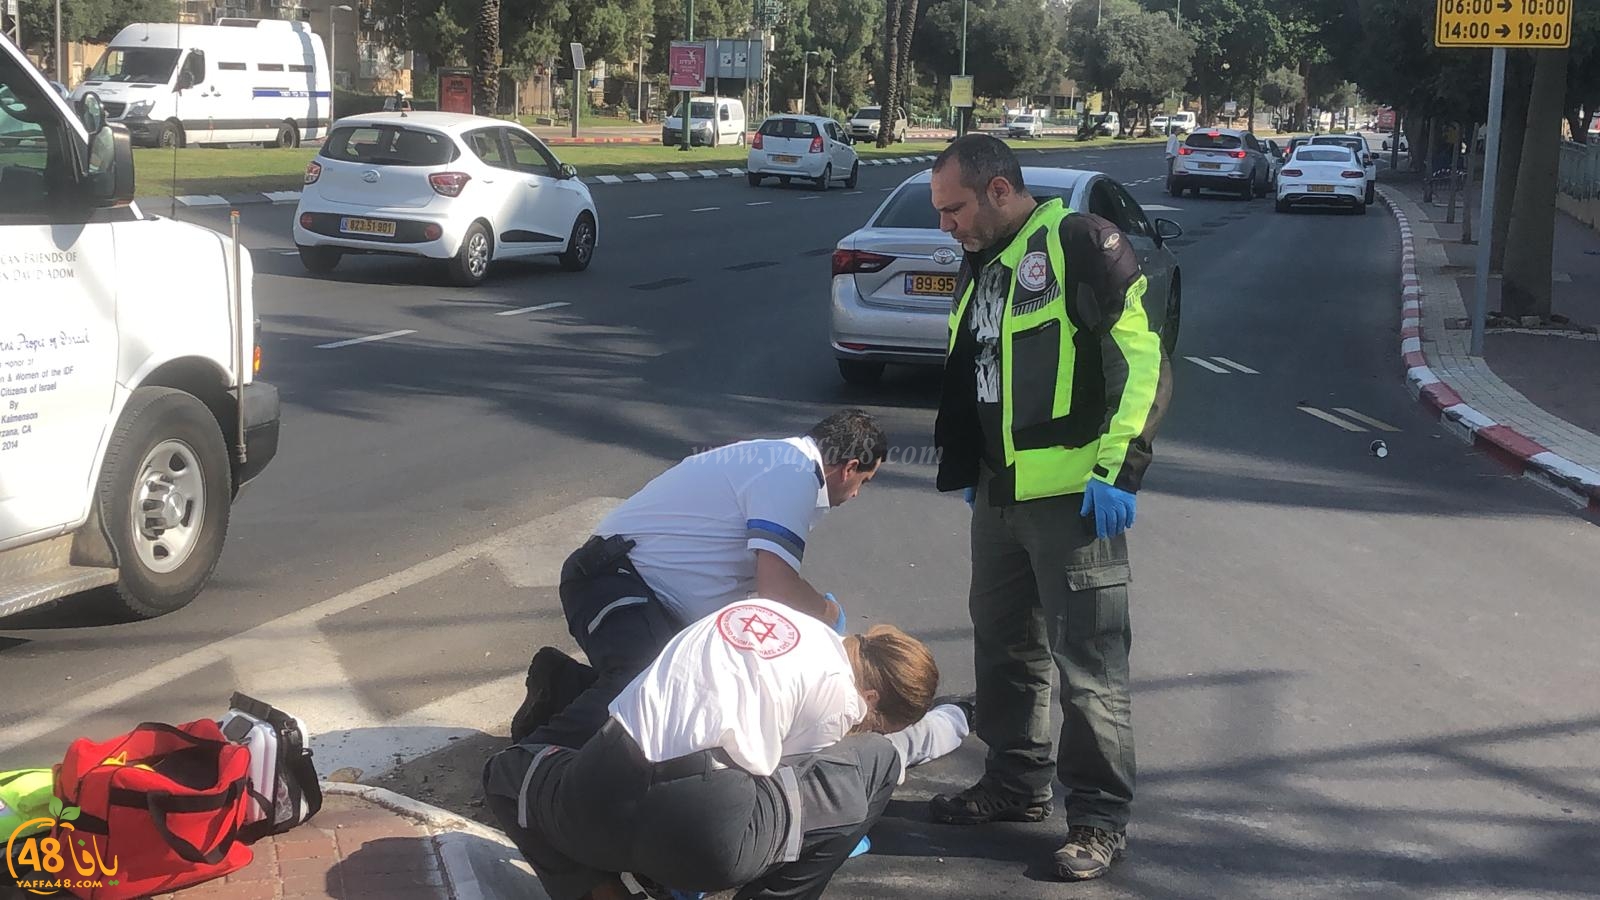  يافا: إصابة متوسطة لراكب دراجة هوائية بحادث دهس 